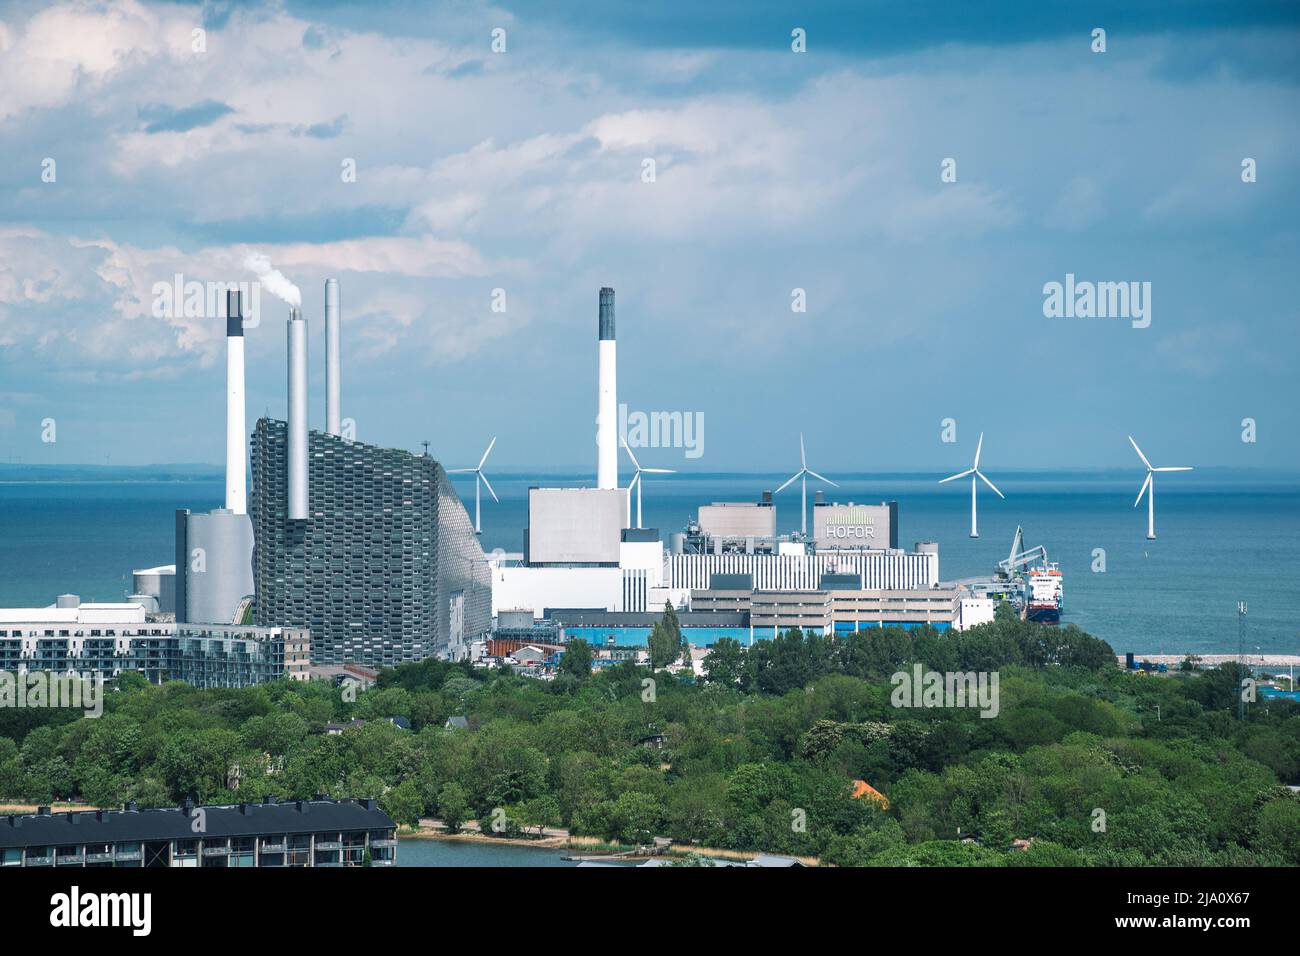 Luftbild von Amager Bakke, Slope oder Copenfill, Verbrennungsanlage, Wärme- und Energieabfall-zu-Energie-Anlage und Offshore-Windkraftanlagen Power, Kopenhagen Stockfoto